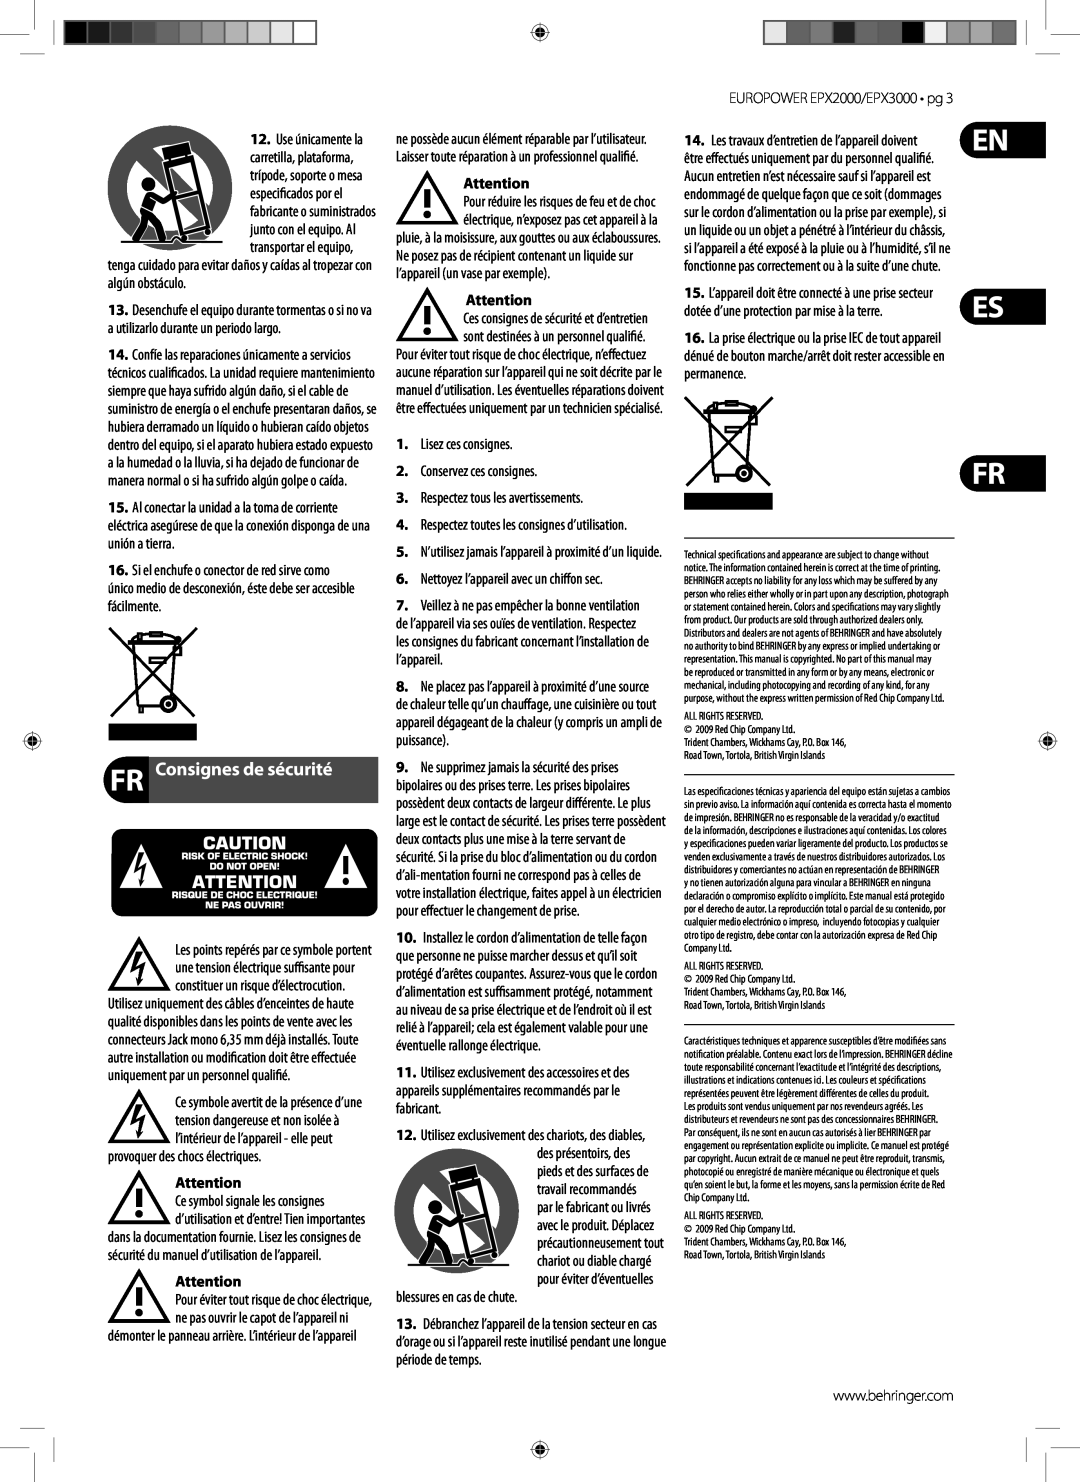 Behringer EPX3000 manual FR Consignes de sécurité 